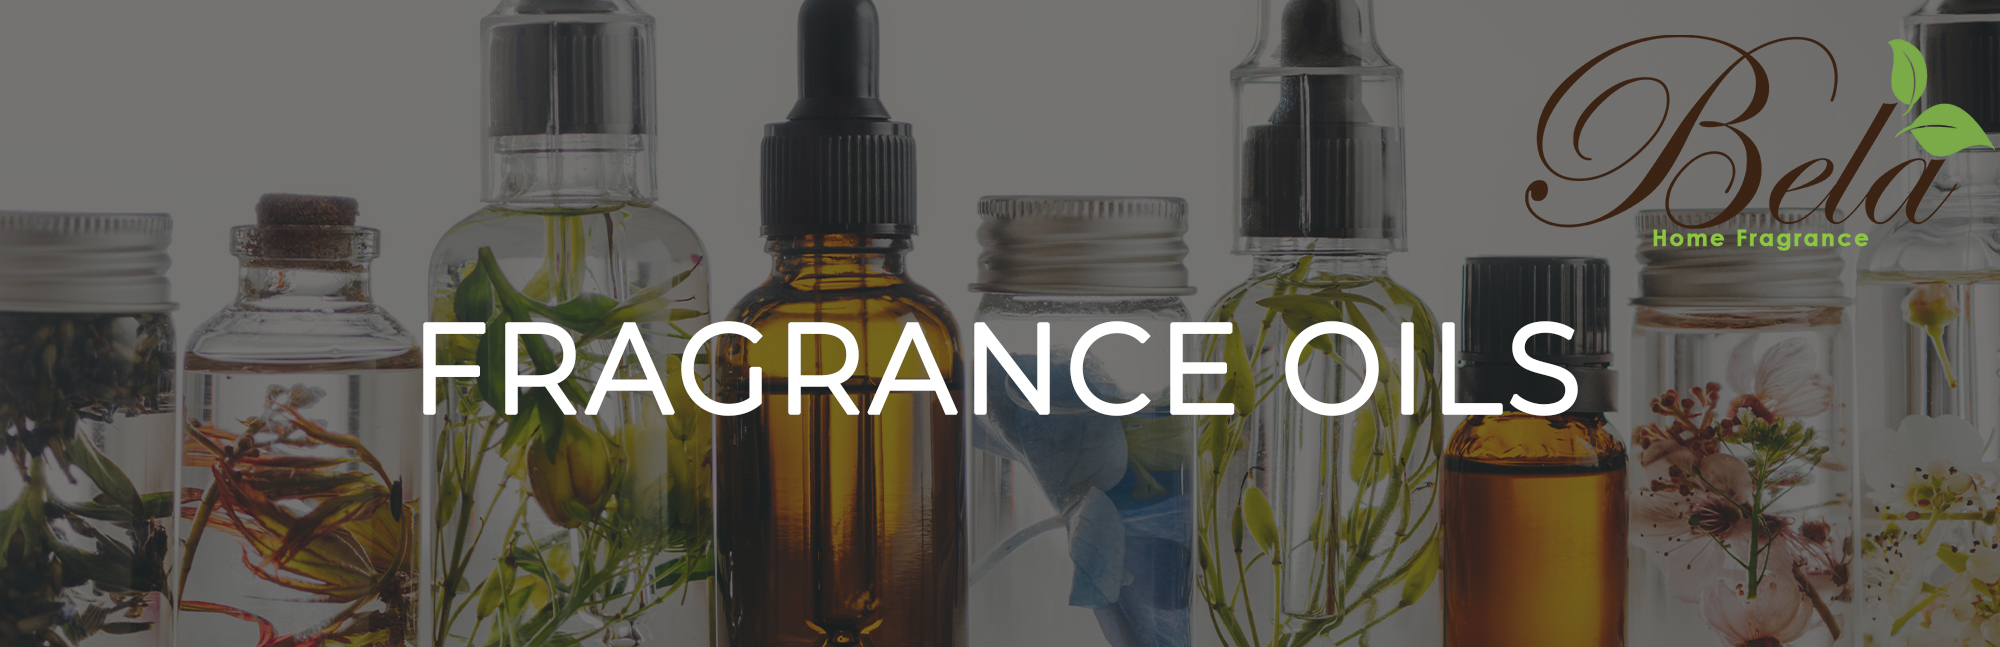 Bela Home Fragrance - Fragrance Oils